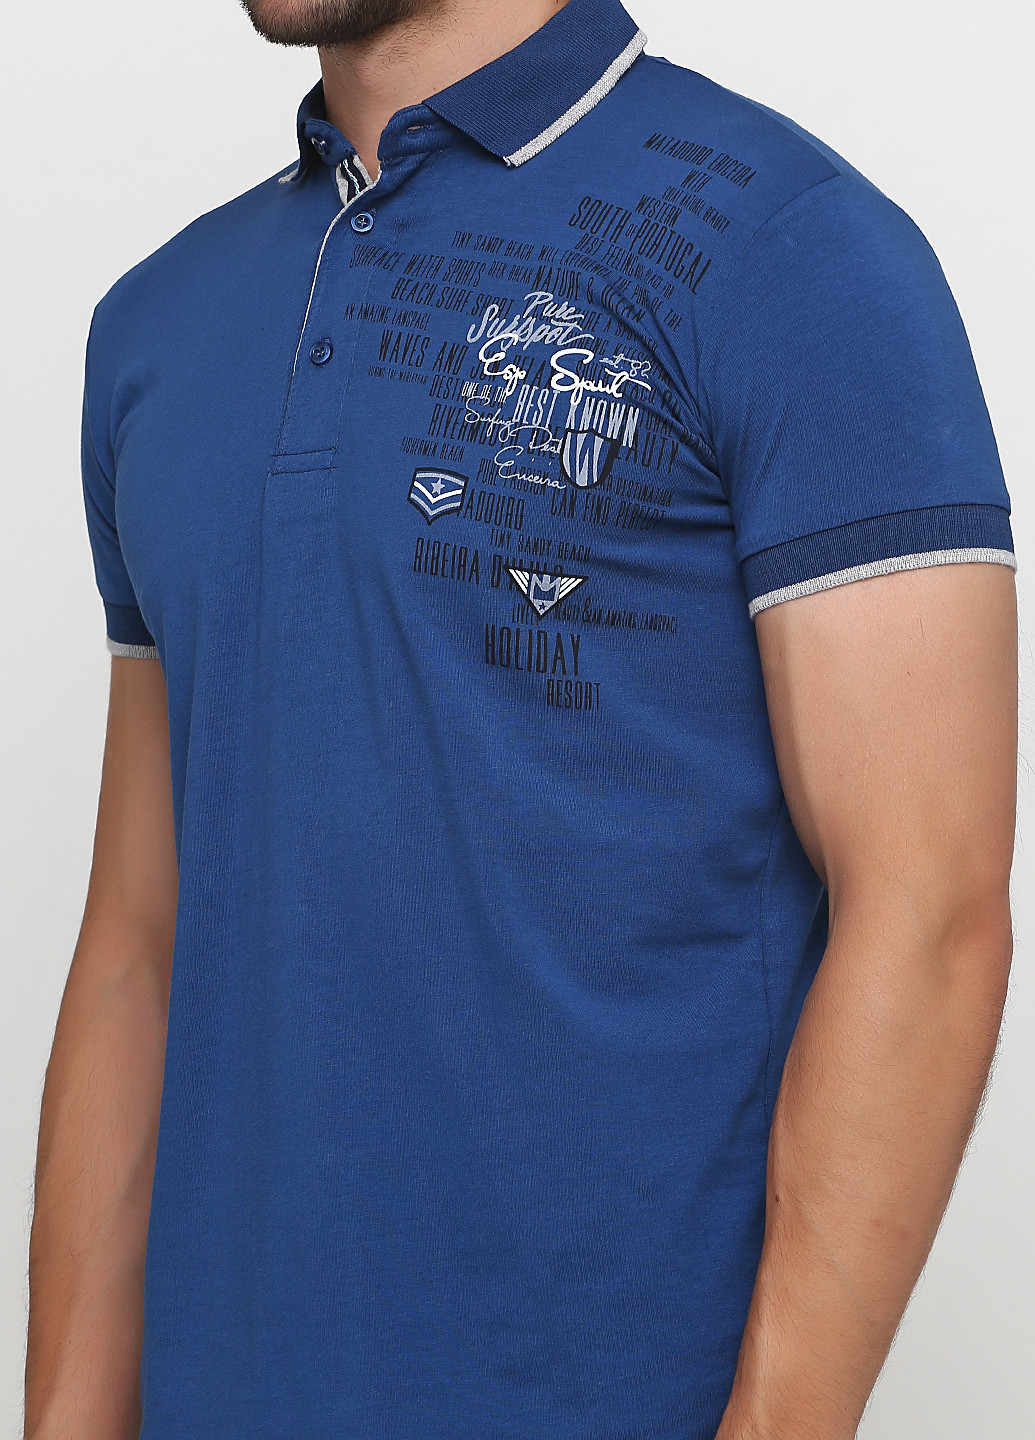 Синяя футболка-поло для мужчин Golf с надписью